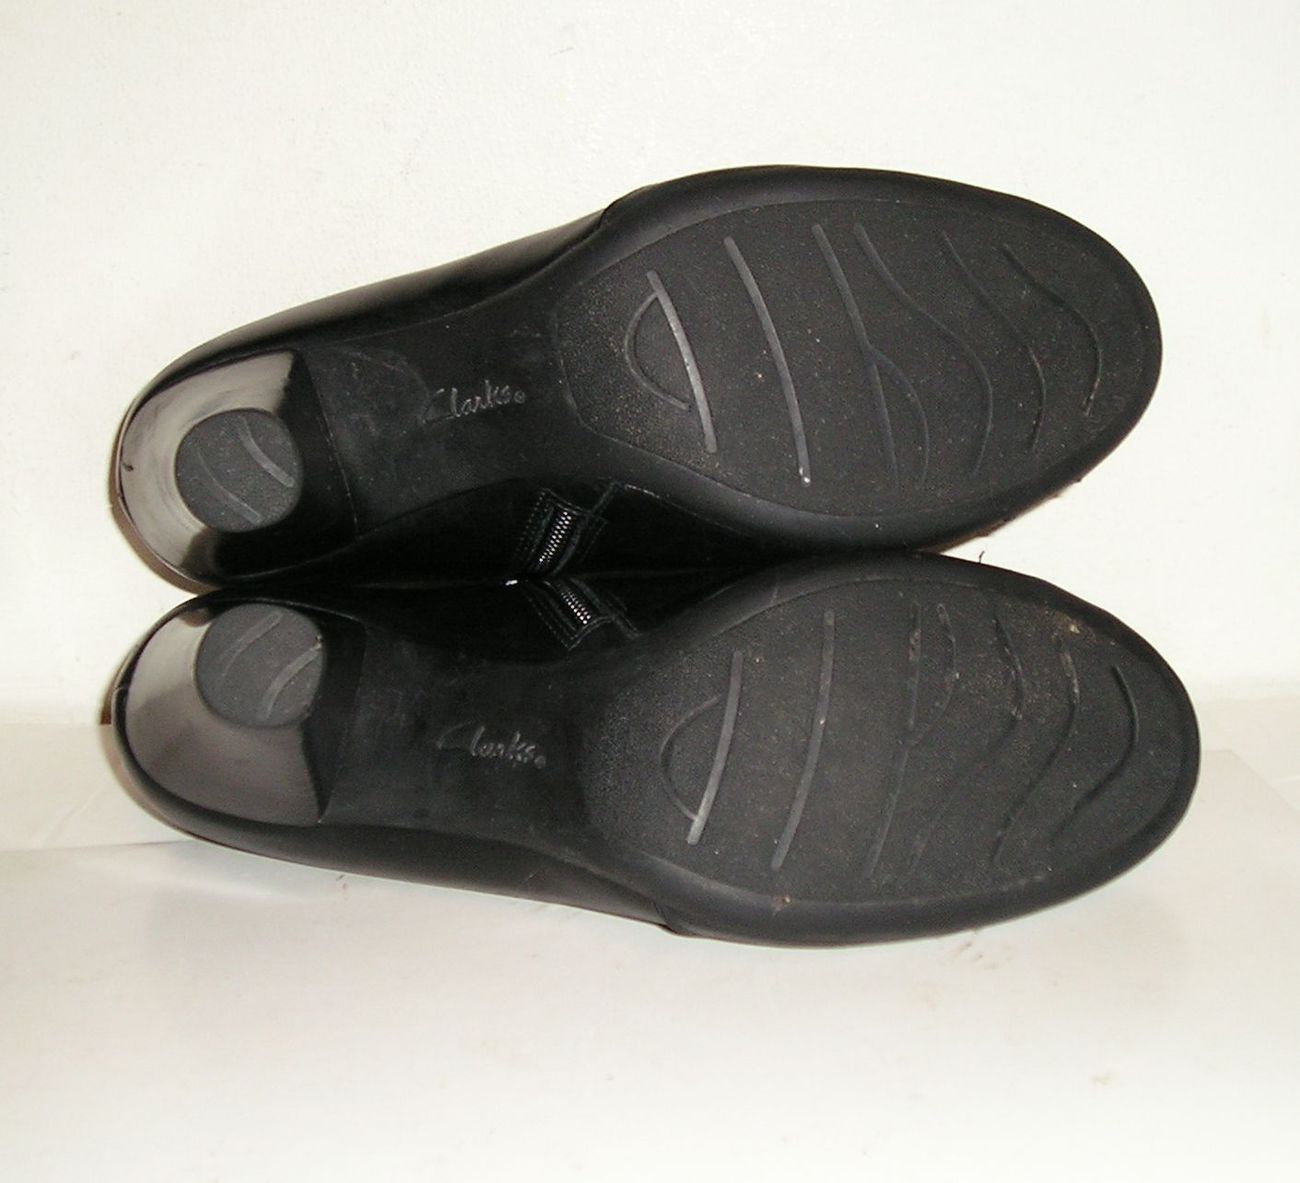 clarks bendables shoes